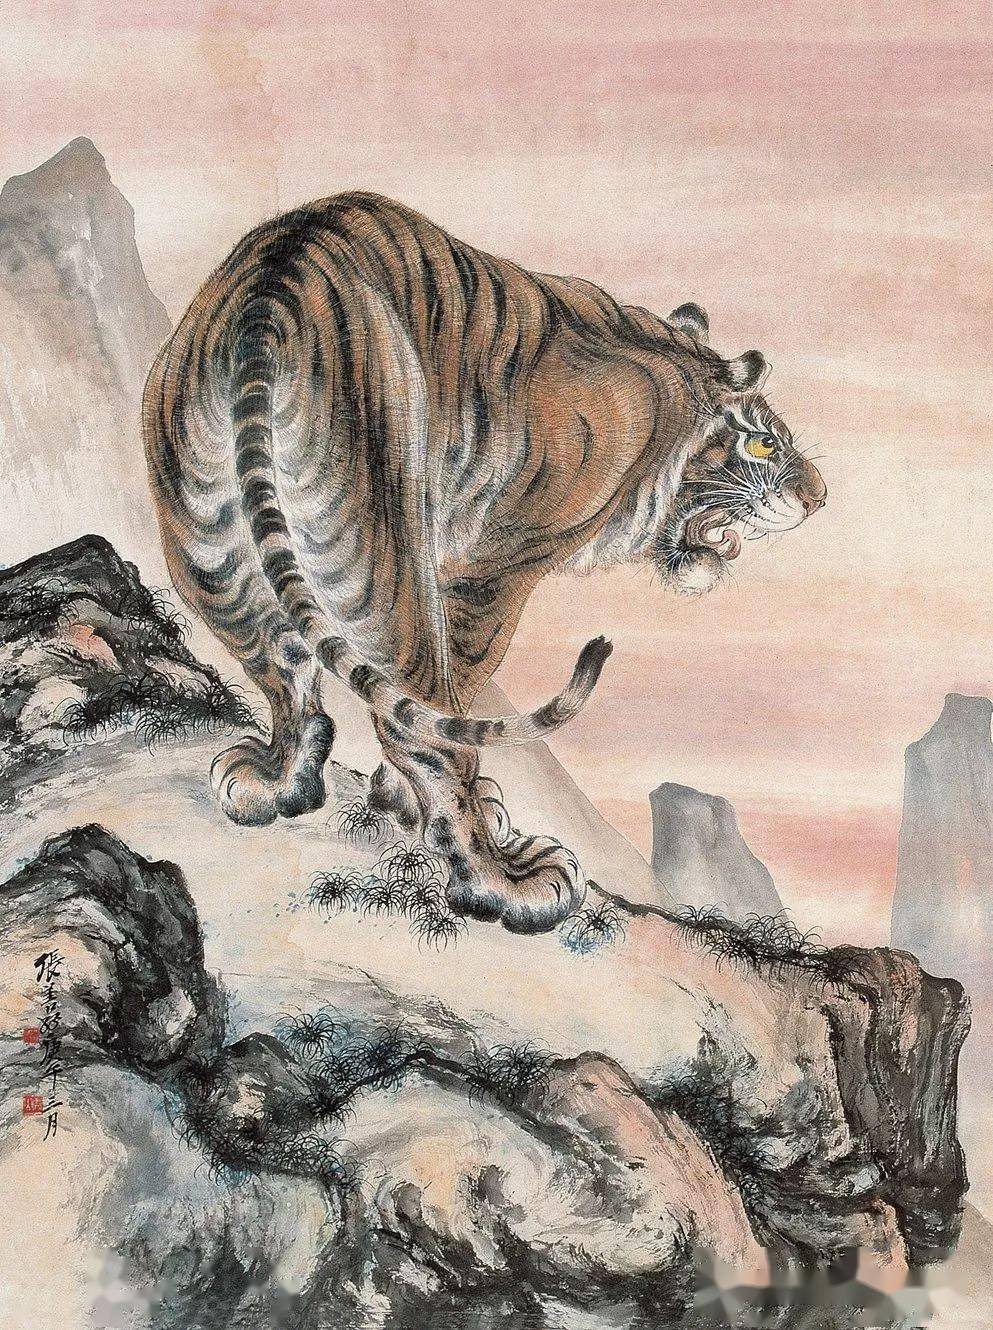 中国第一虎画家图片